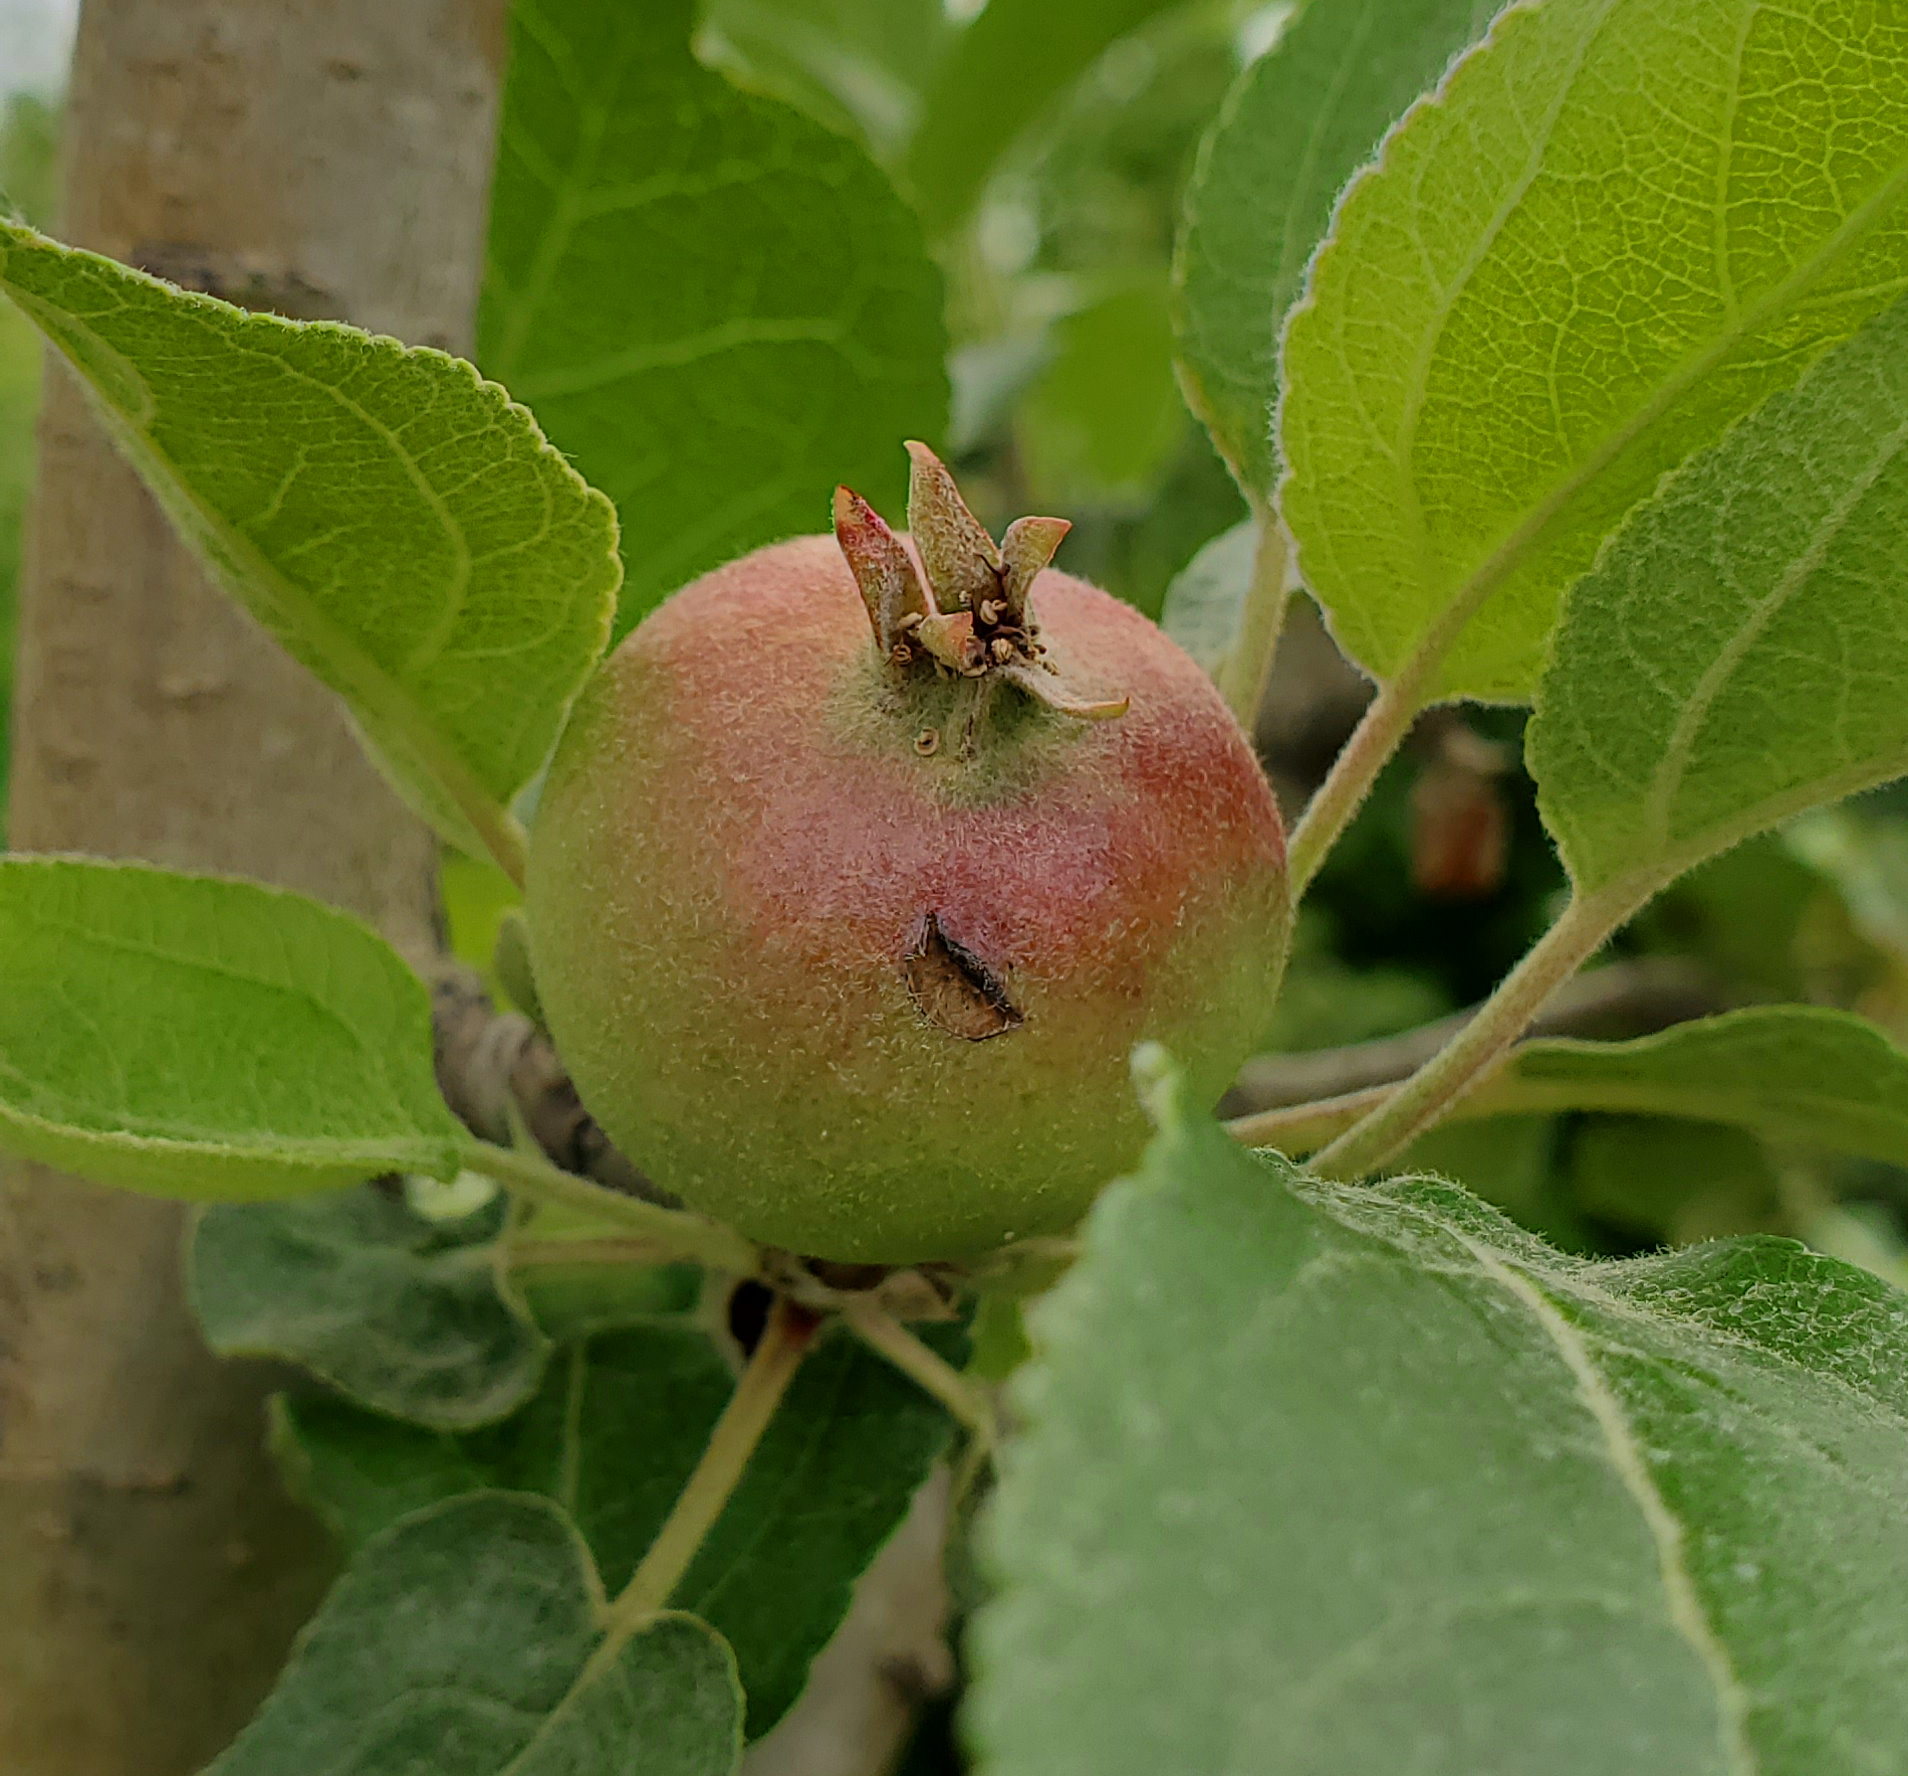 Plum curculio damage in apple.